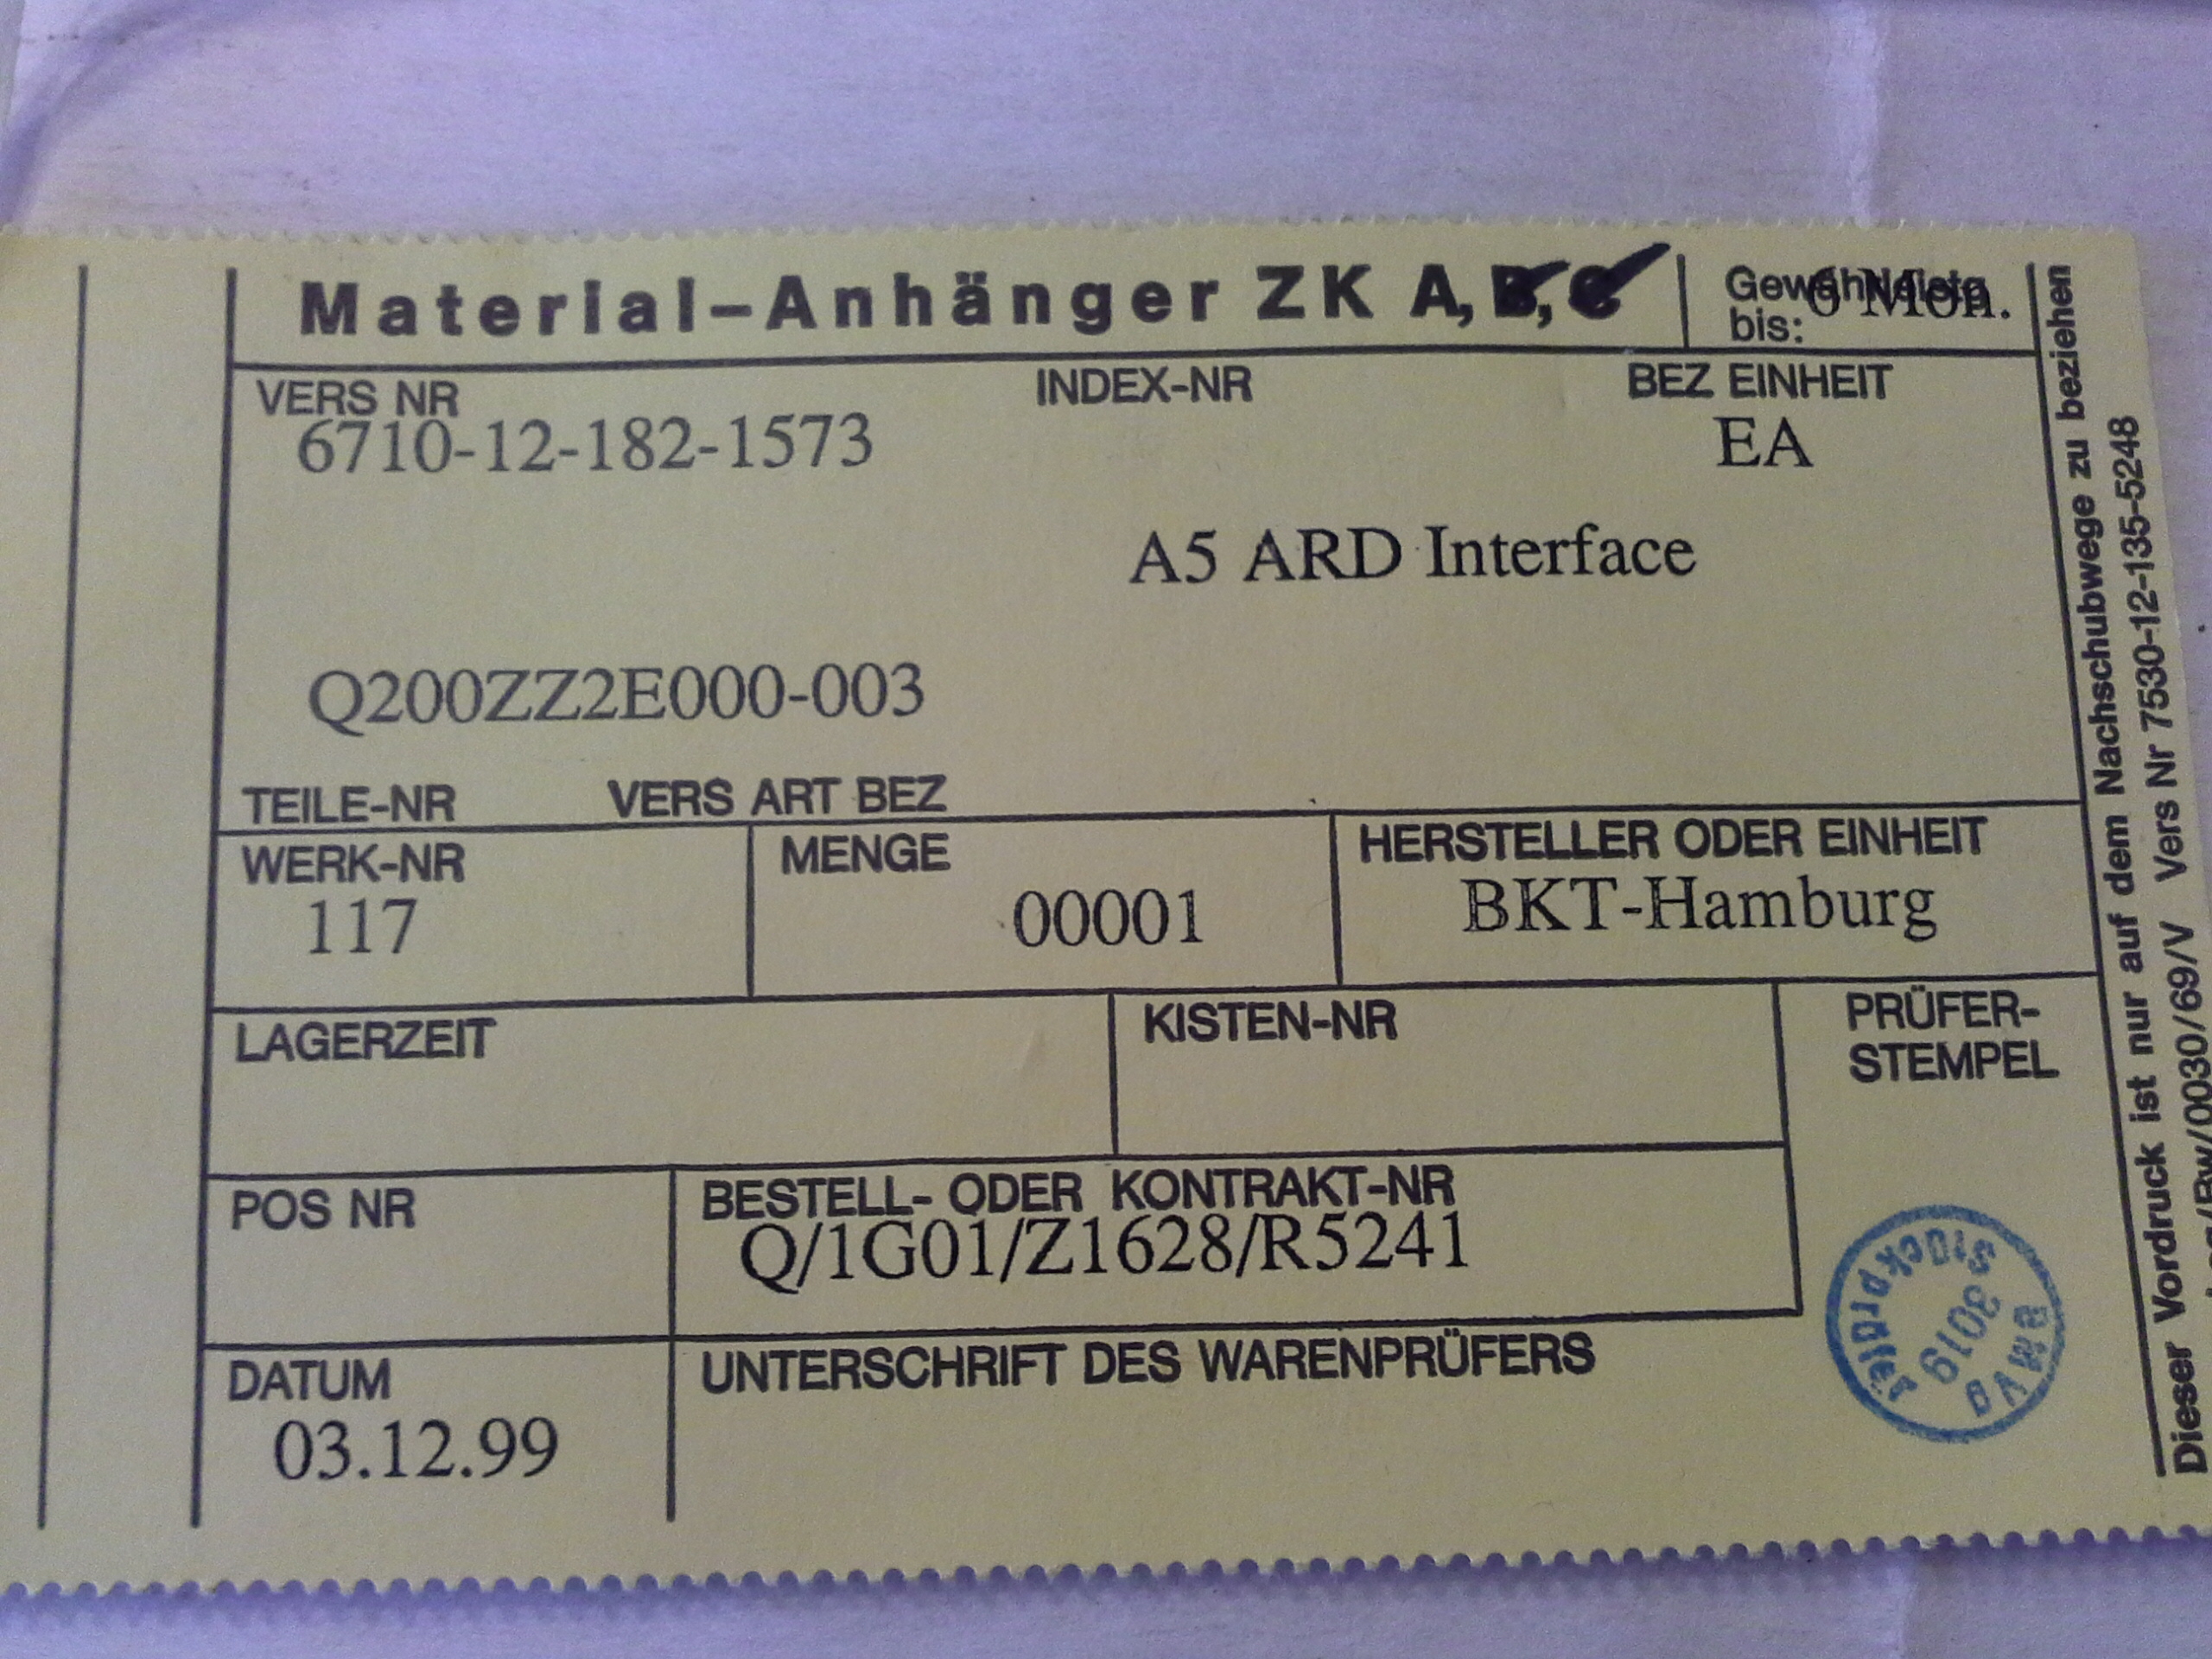 Gedruckte Schaltkreis A5 ARD Interface Q200ZZ2E000-003